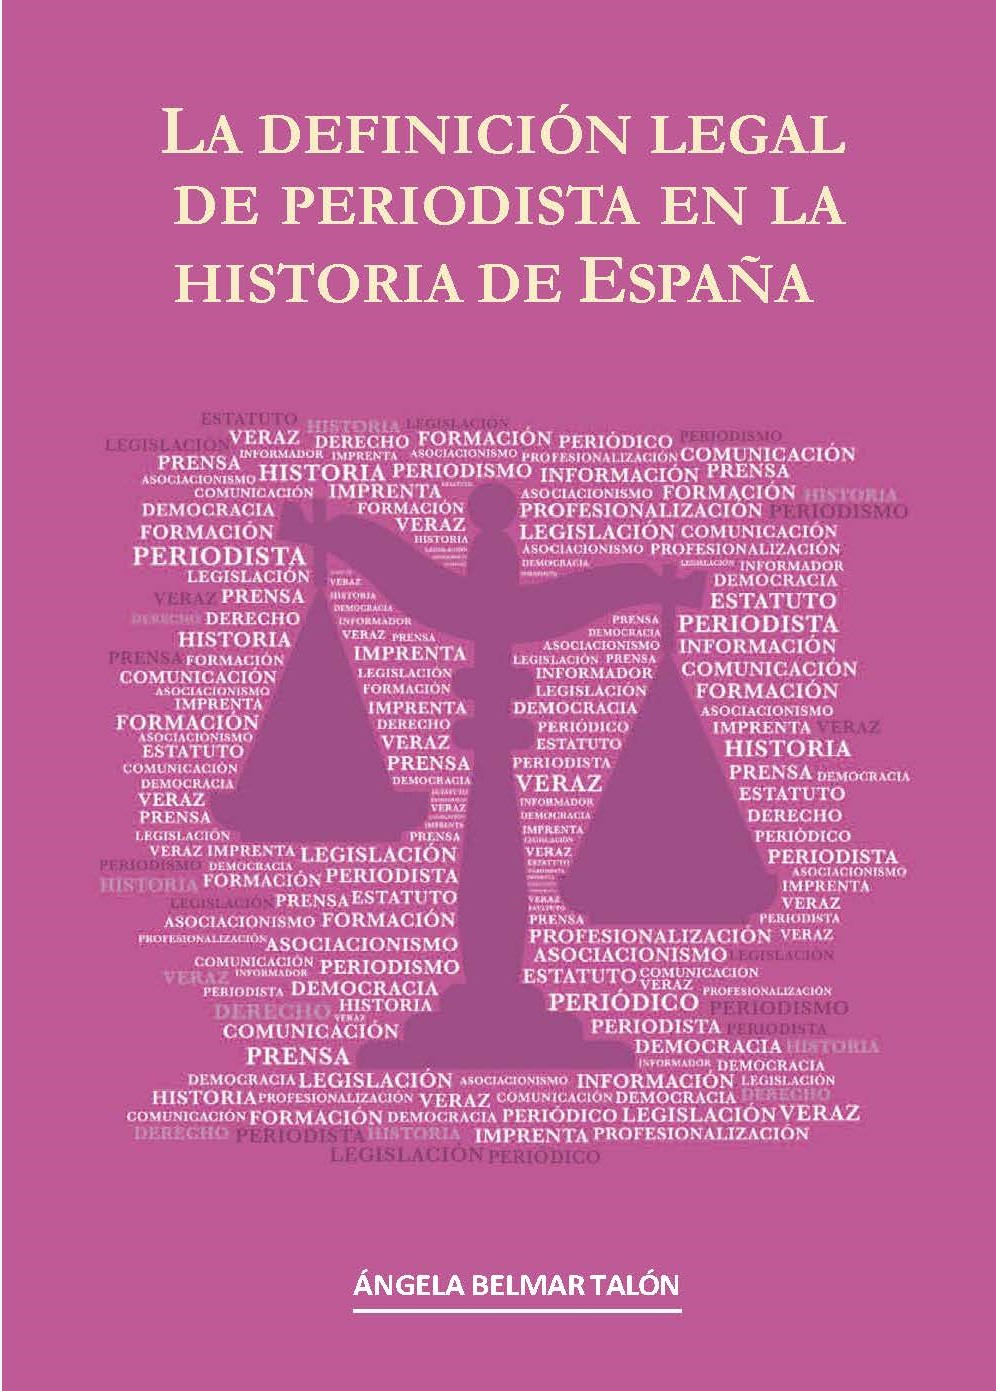 La definición legal de periodista en la historia de España